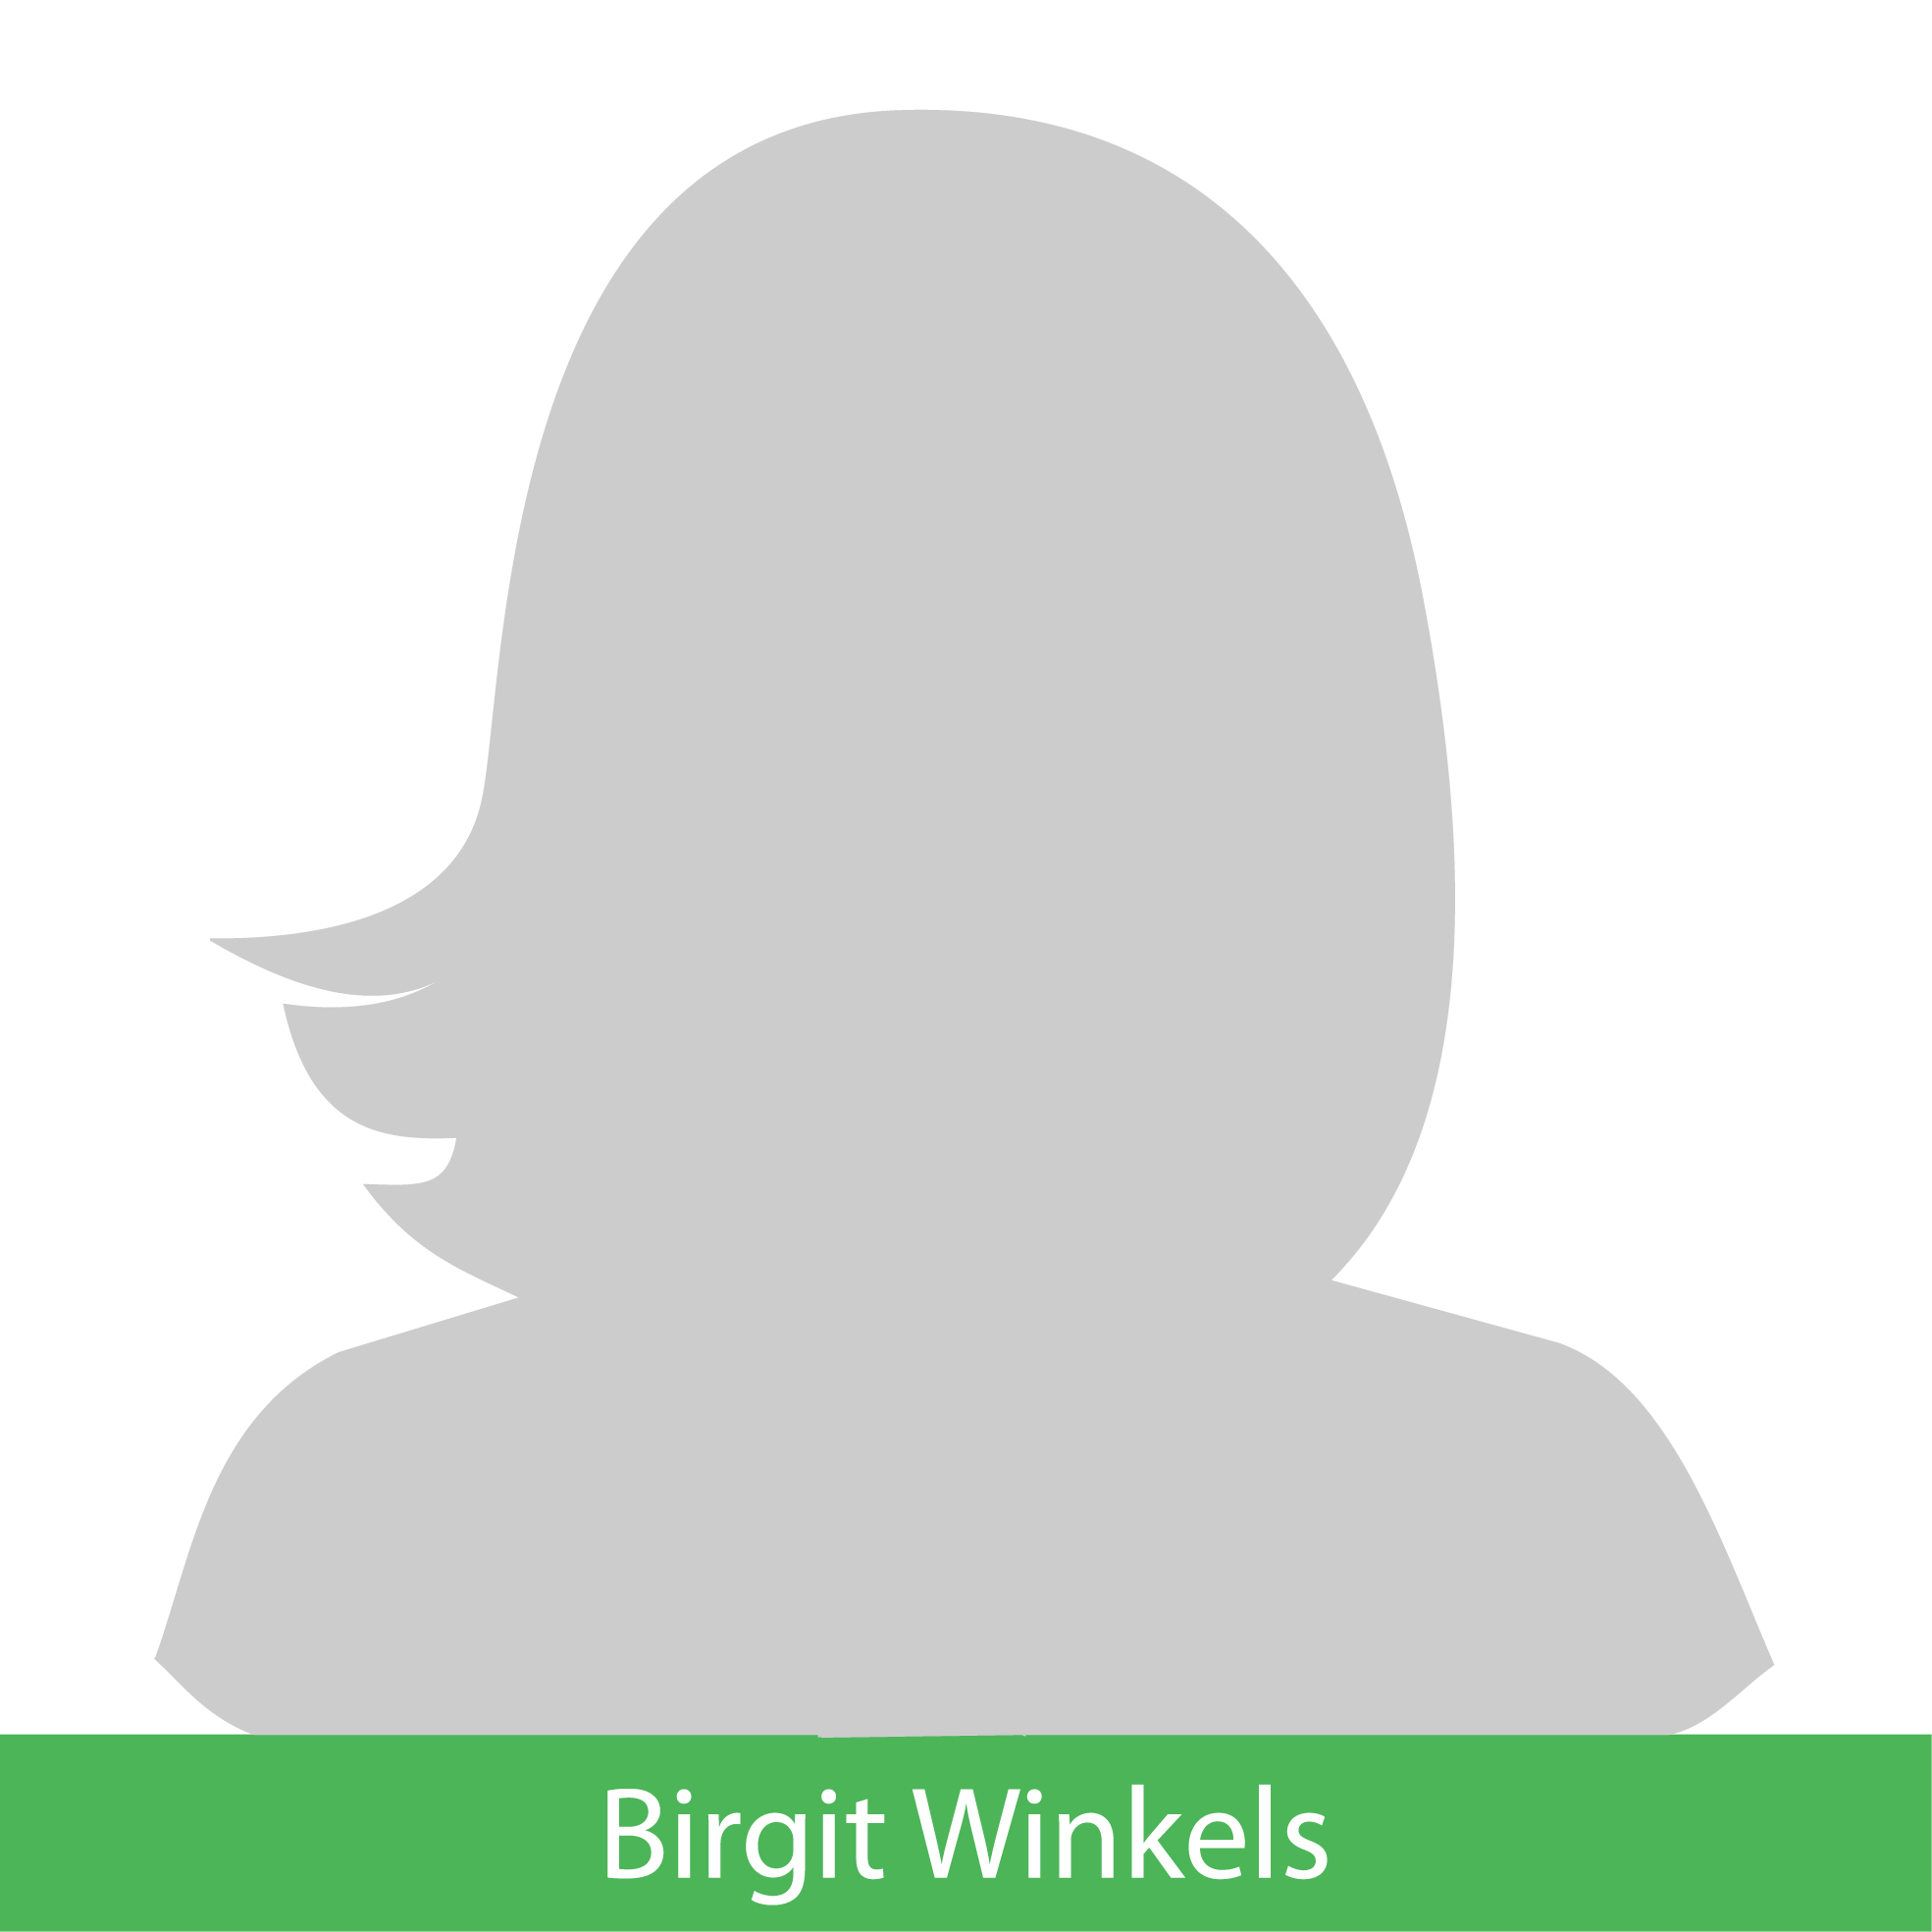 Birgit Winkels